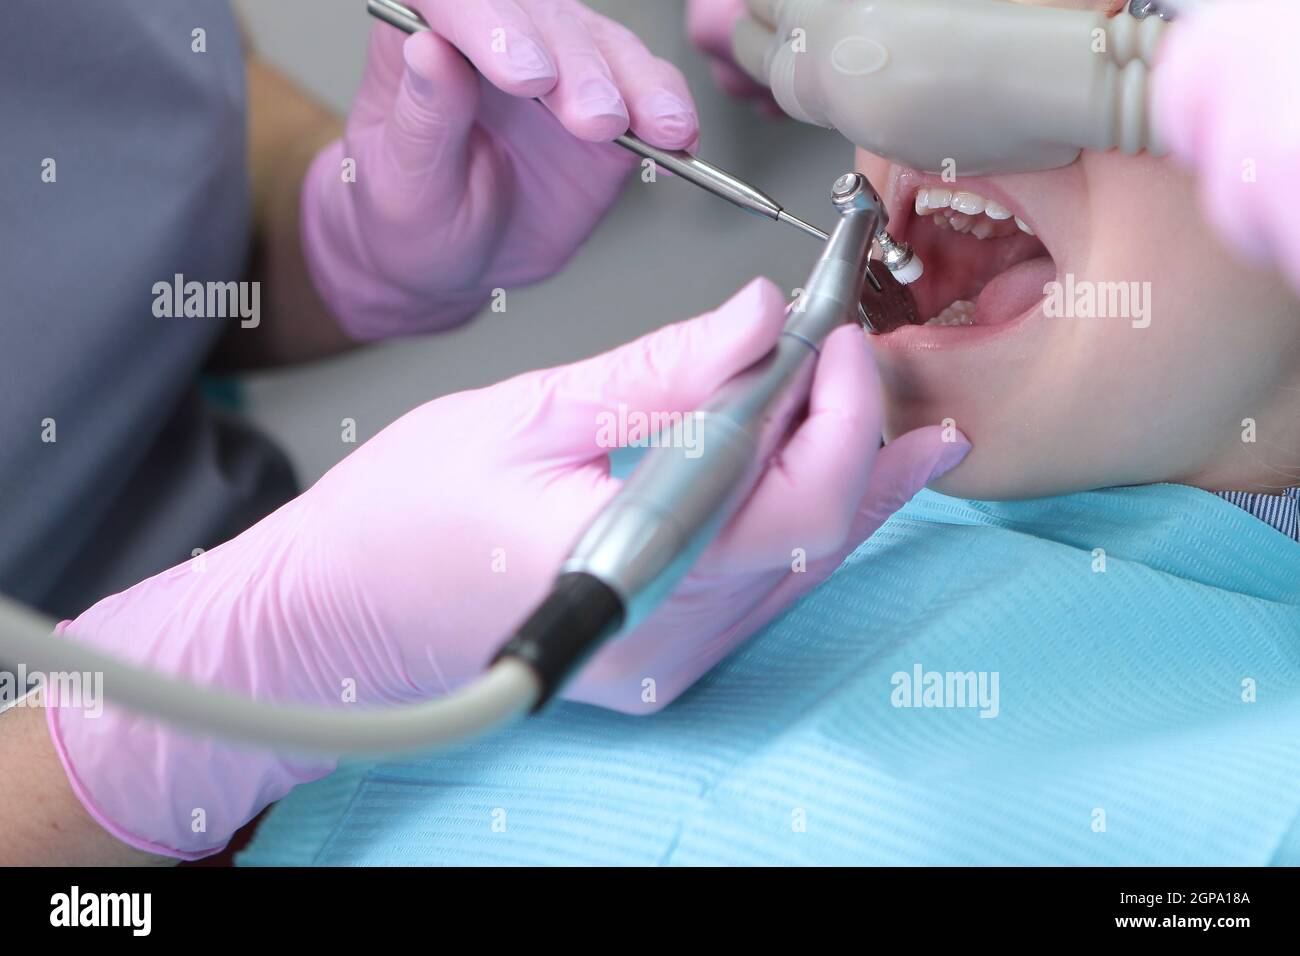 Traitement dentaire chez un enfant avec l'utilisation d'oxyde nitreux. Relaxation du patient avant les interventions chirurgicales ou dentaires. Dentisterie moderne pour enfants Banque D'Images